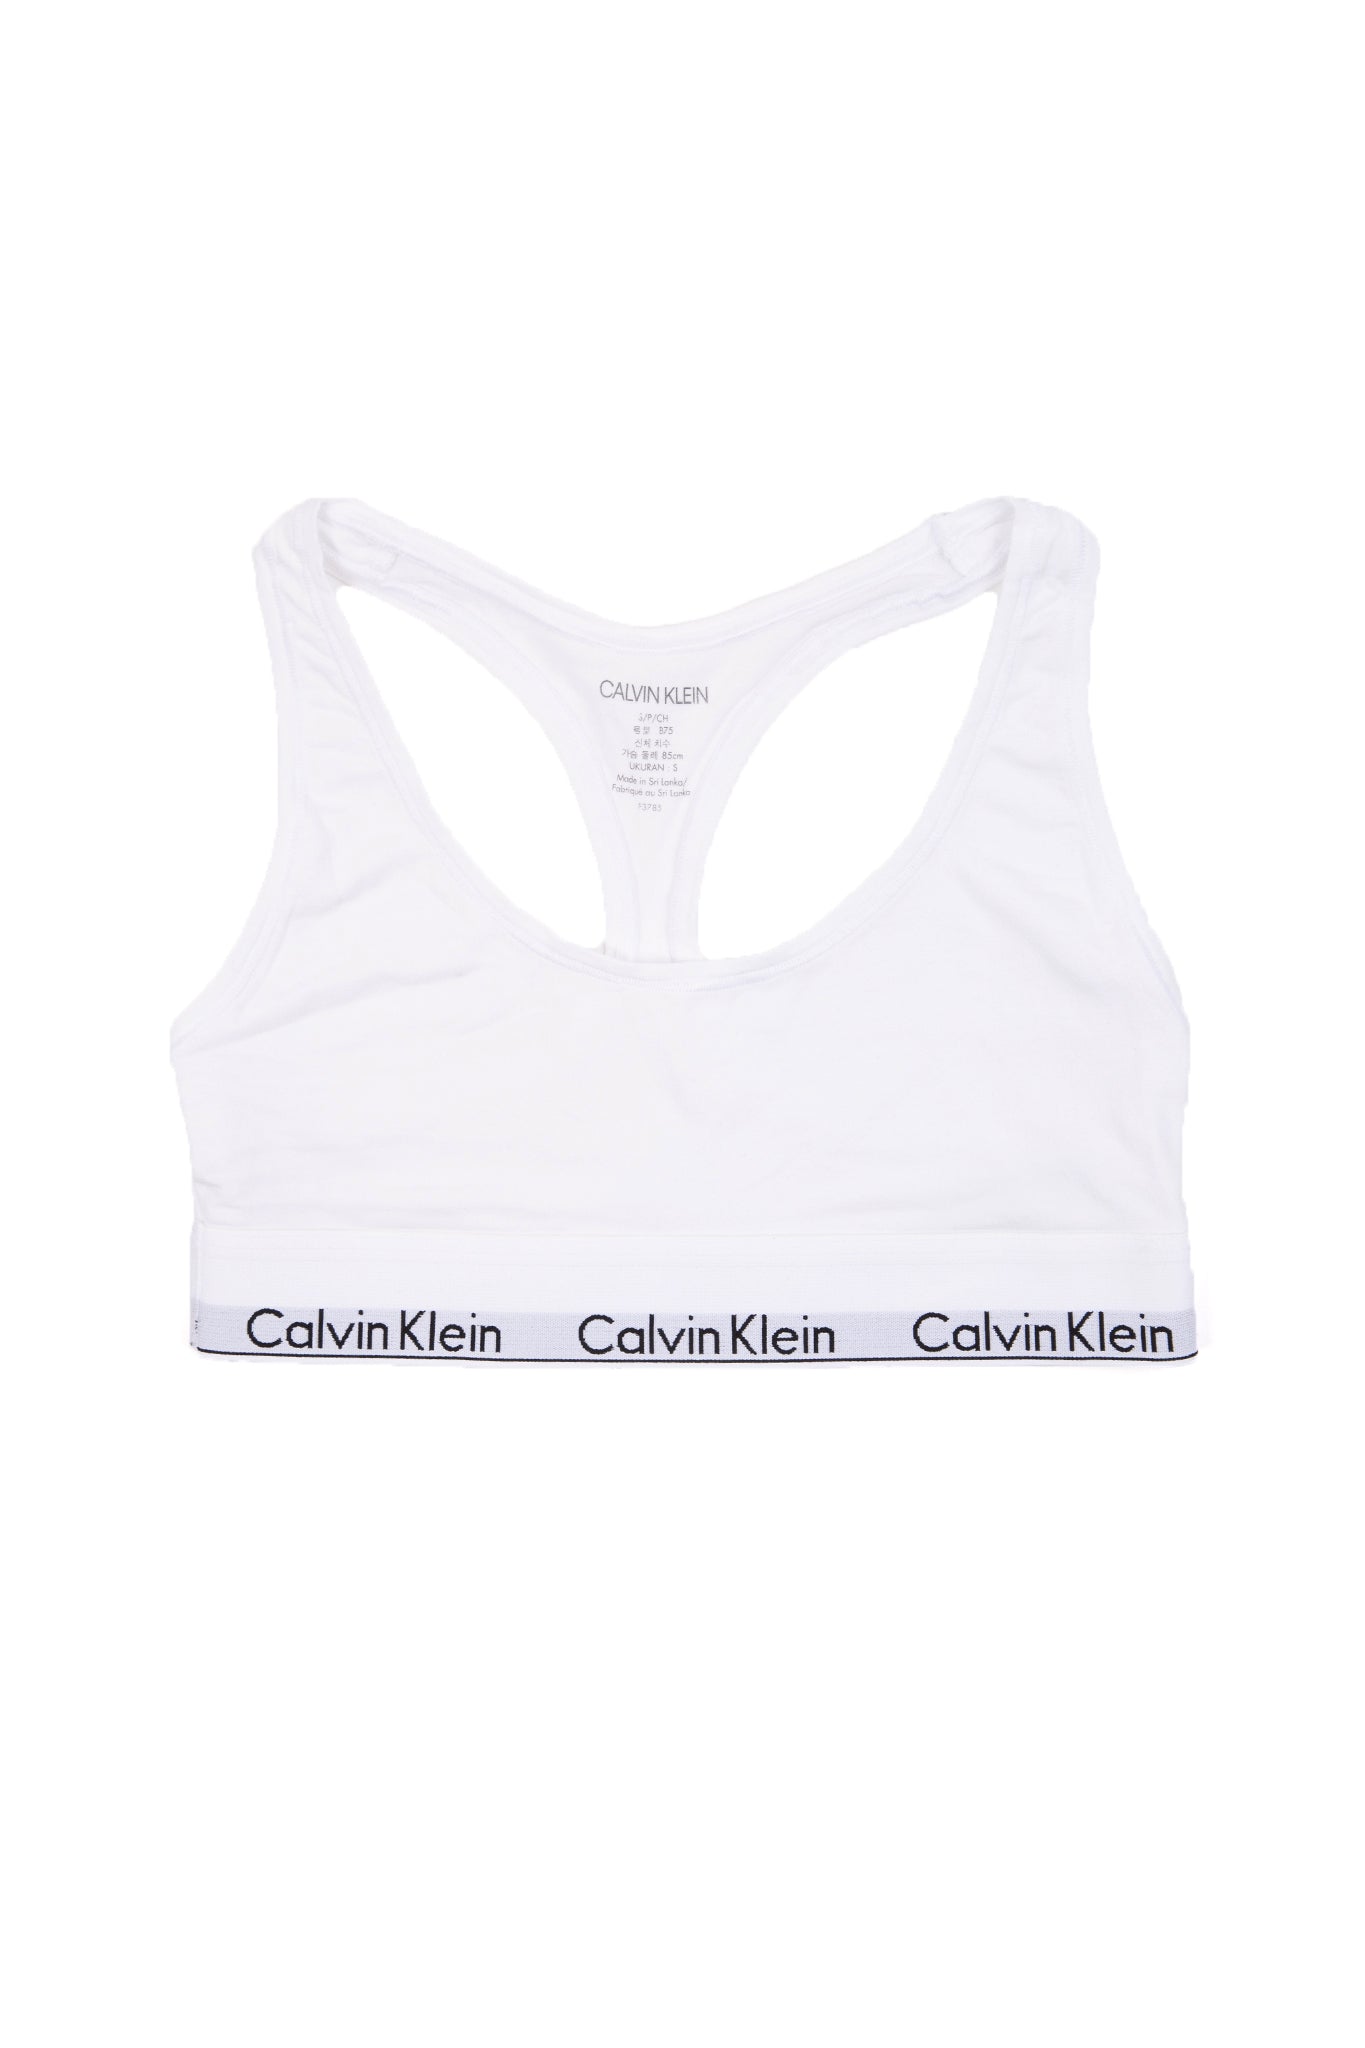 Buy Calvin Klein Standards Unlined Bralette - Bone White At 44% Off